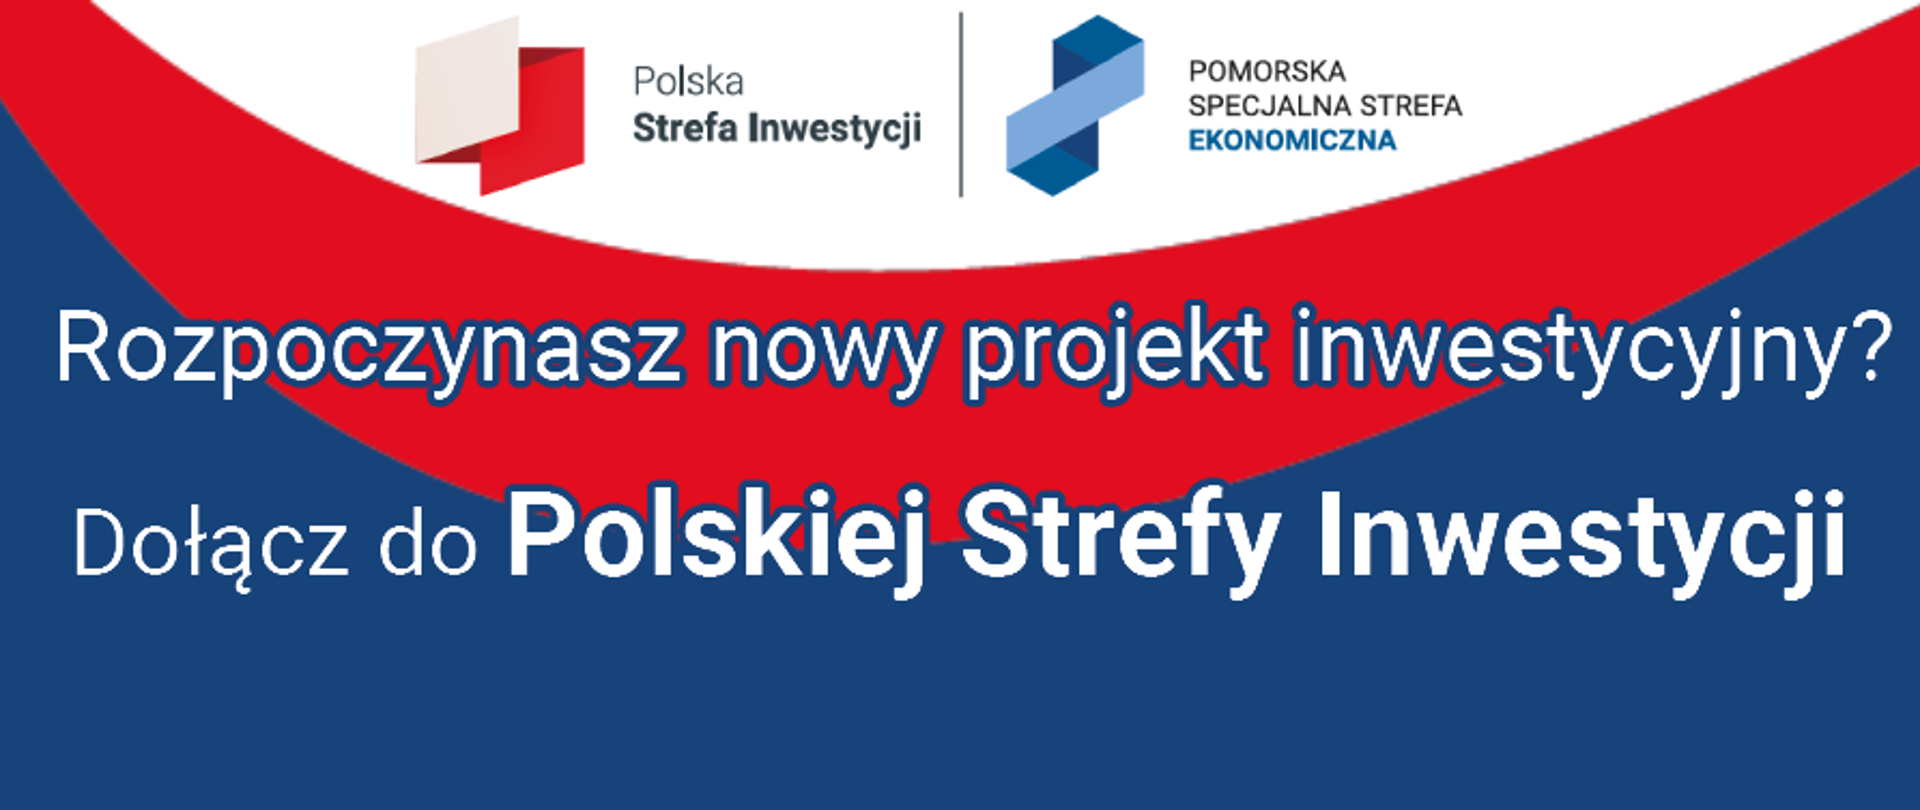 Loga Polskiej Strefy Inwestycji i Pomorskiej Specjalnej Strefy Ekonomicznej, pod nimi napis "Rozpoczynasz nowy projekt inwestycyjny? Dołącz do Polskiej Strefy Inwestycji"